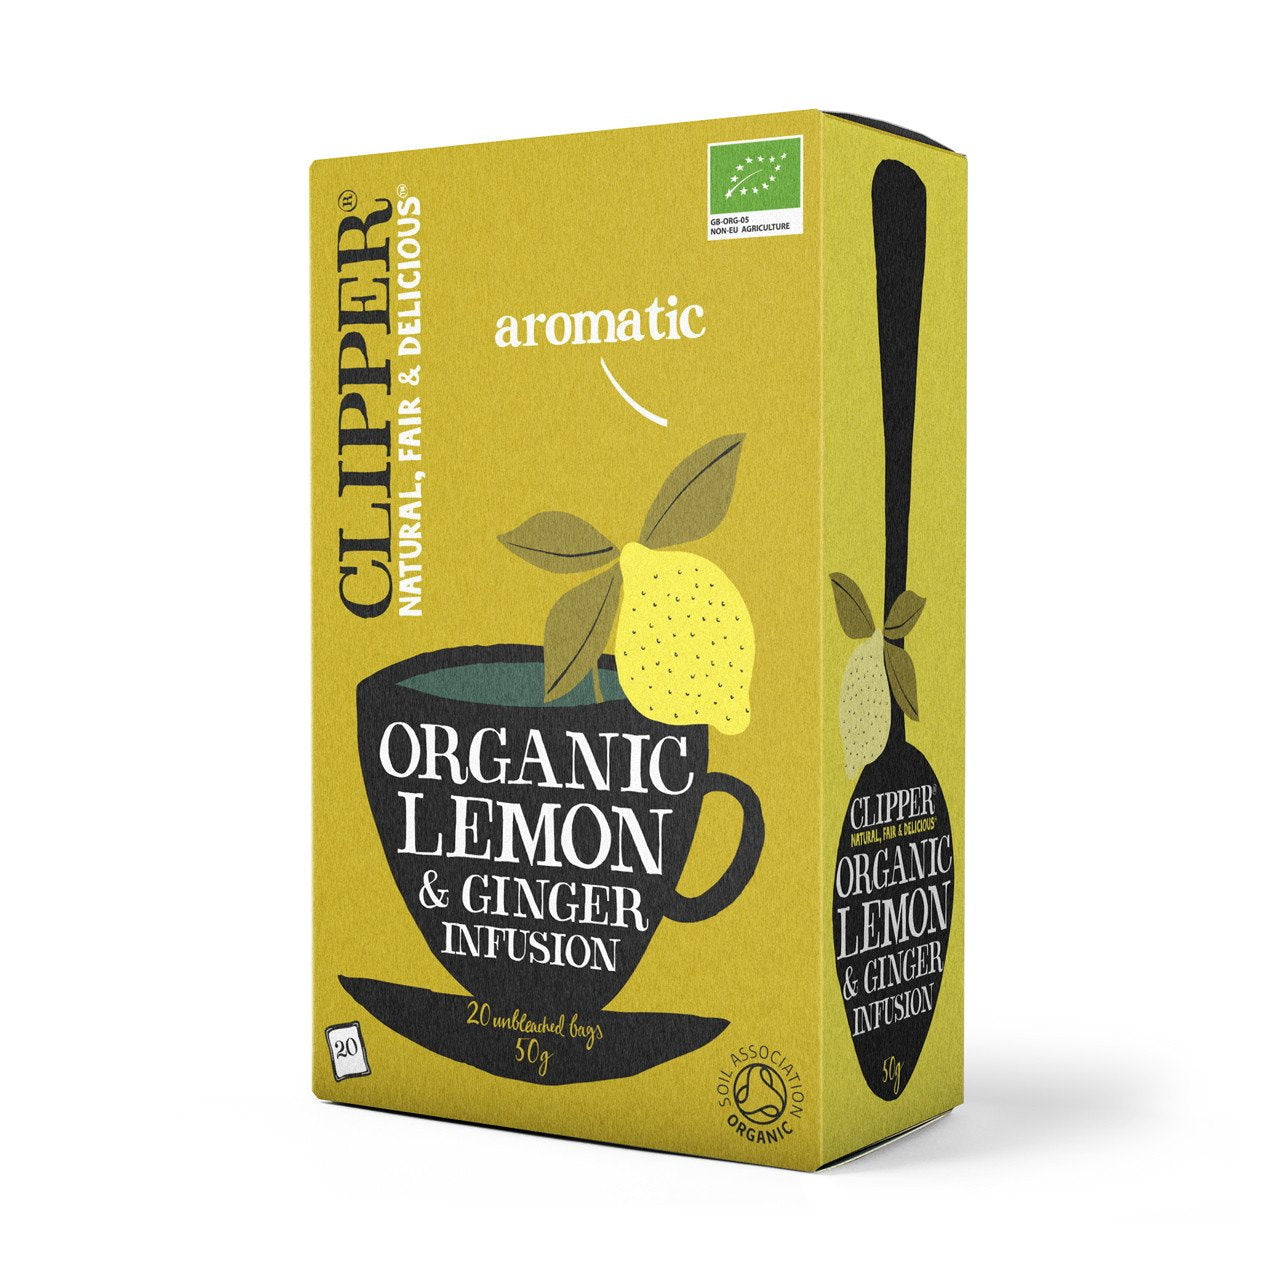 Clipper 25 Organic Lemon & Ginger Infusion Enveloped Bags 62.5g